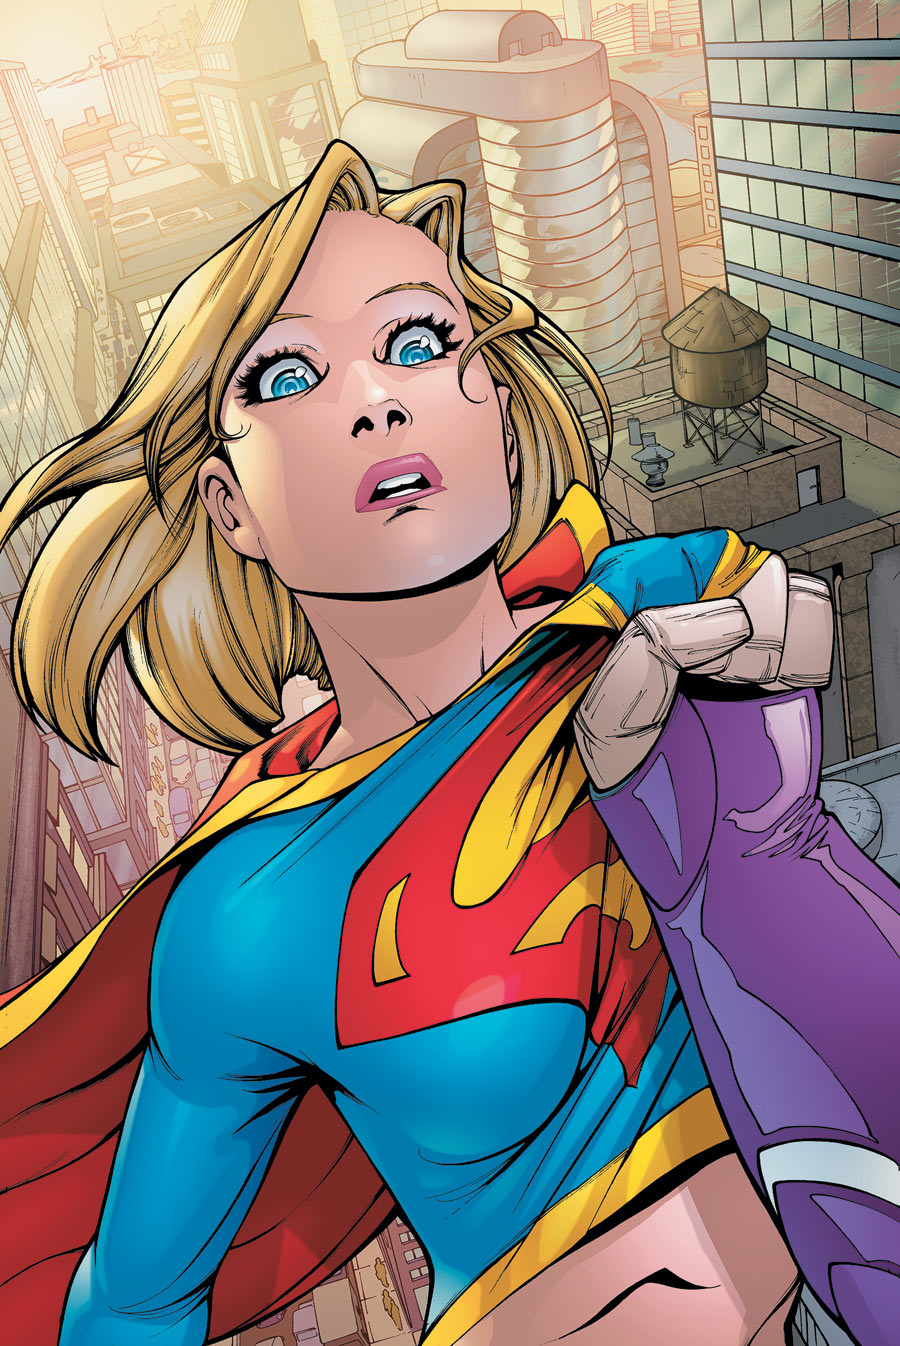 Supergirl #63